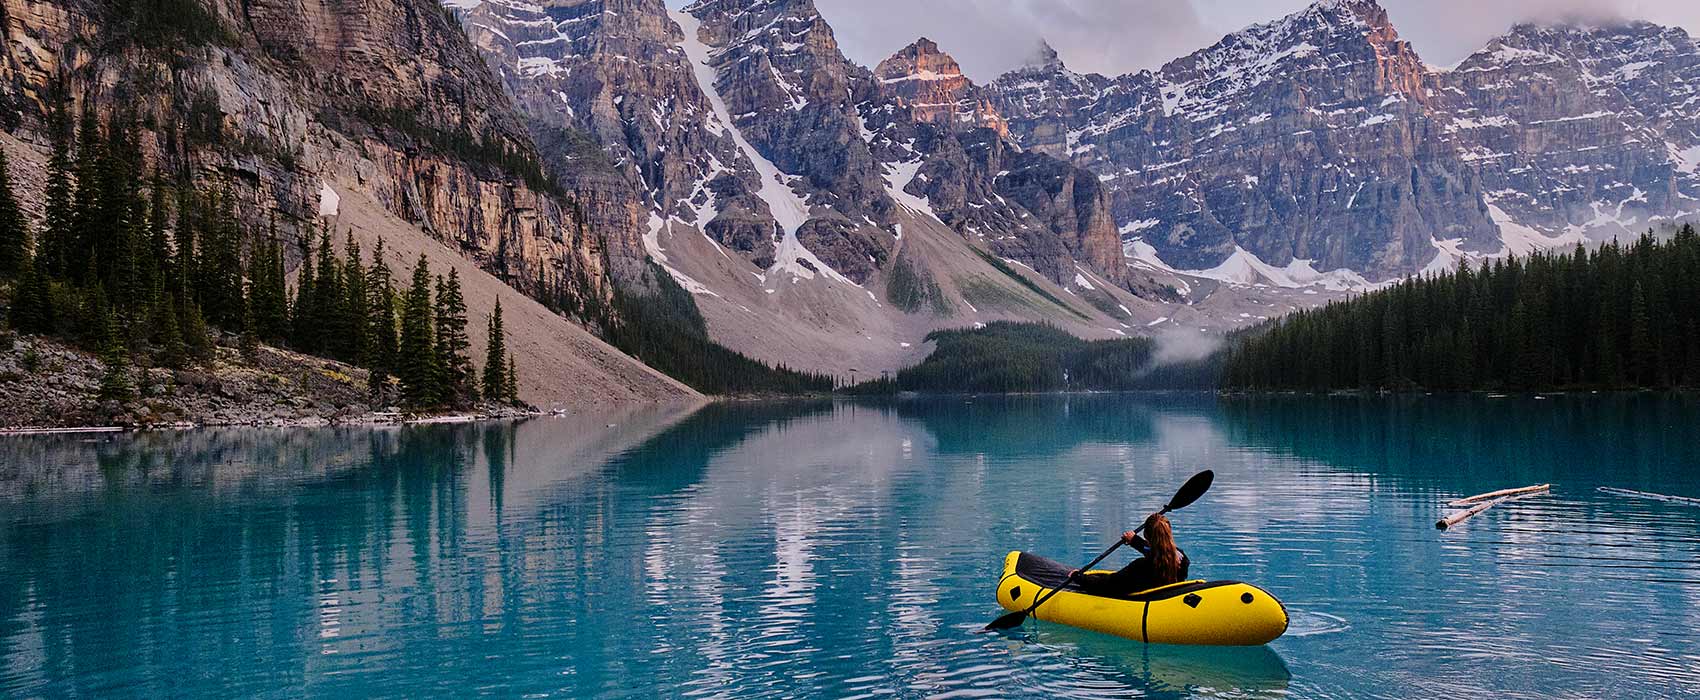 kayaking across mountain lake at sunrise